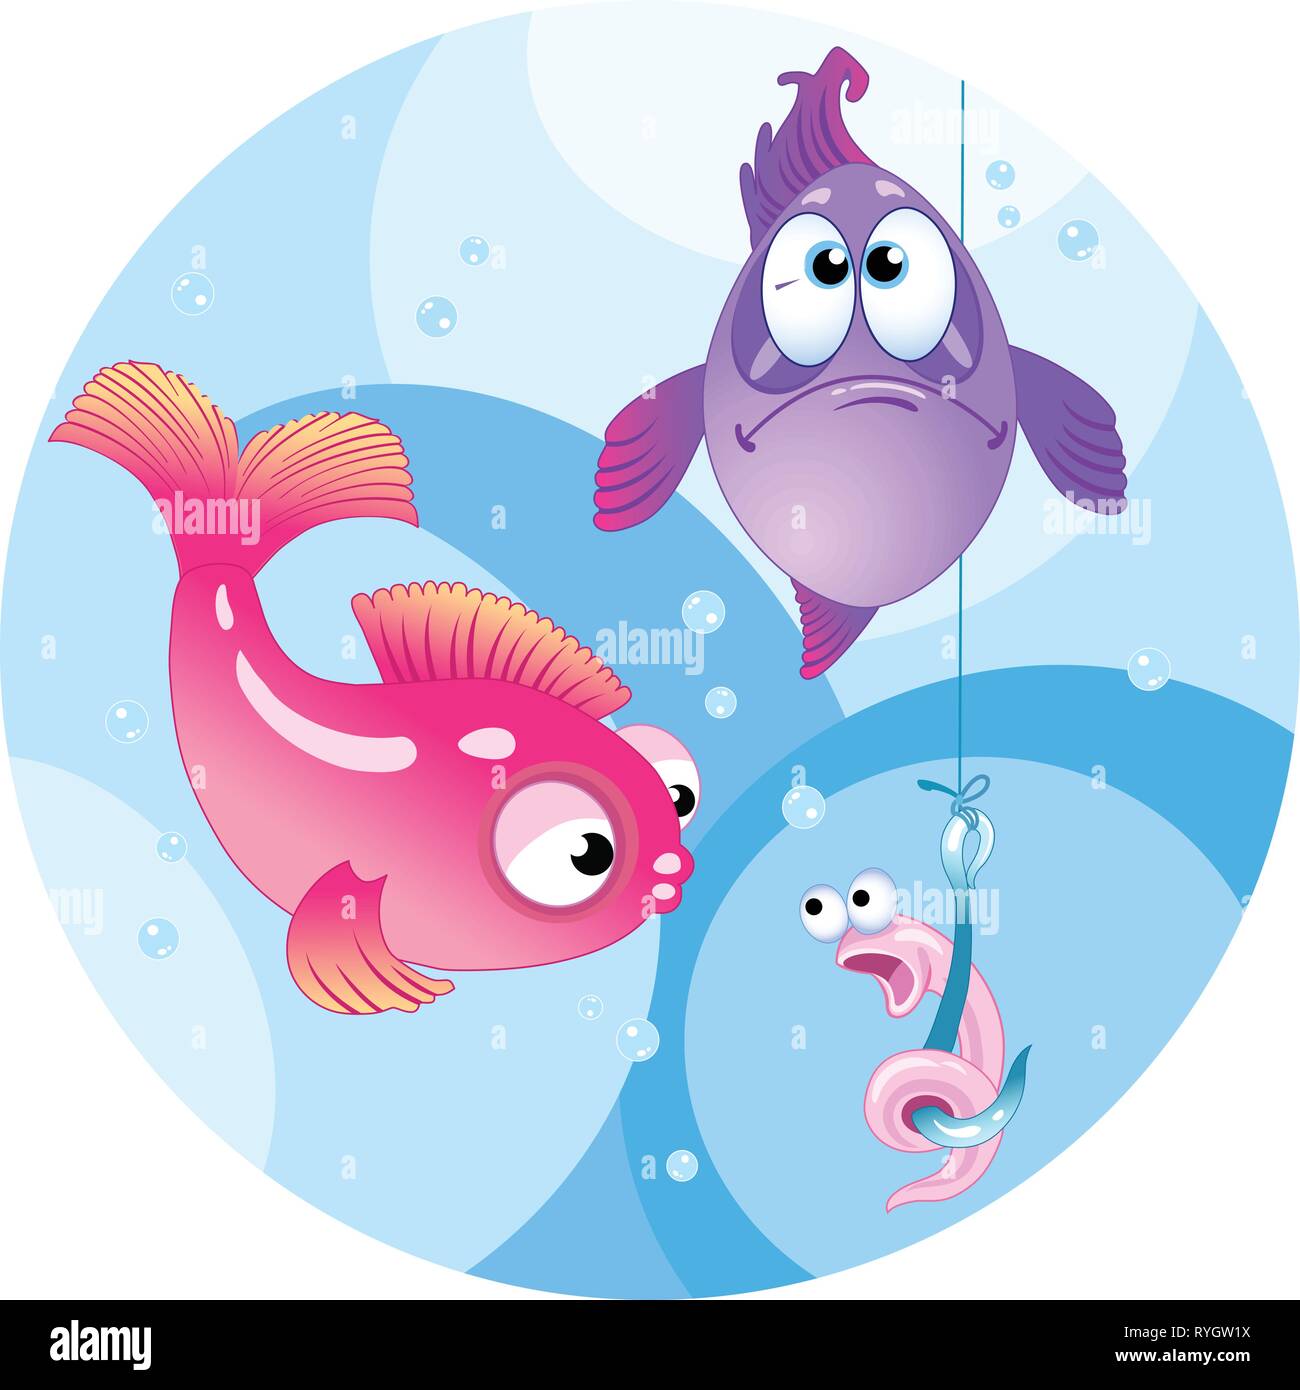 L'illustration montre deux poissons colorés. Ils sont à la recherche d'un crochet avec un drôle de ver.Illustration fait en style dessin animé, sur des calques distincts. Illustration de Vecteur